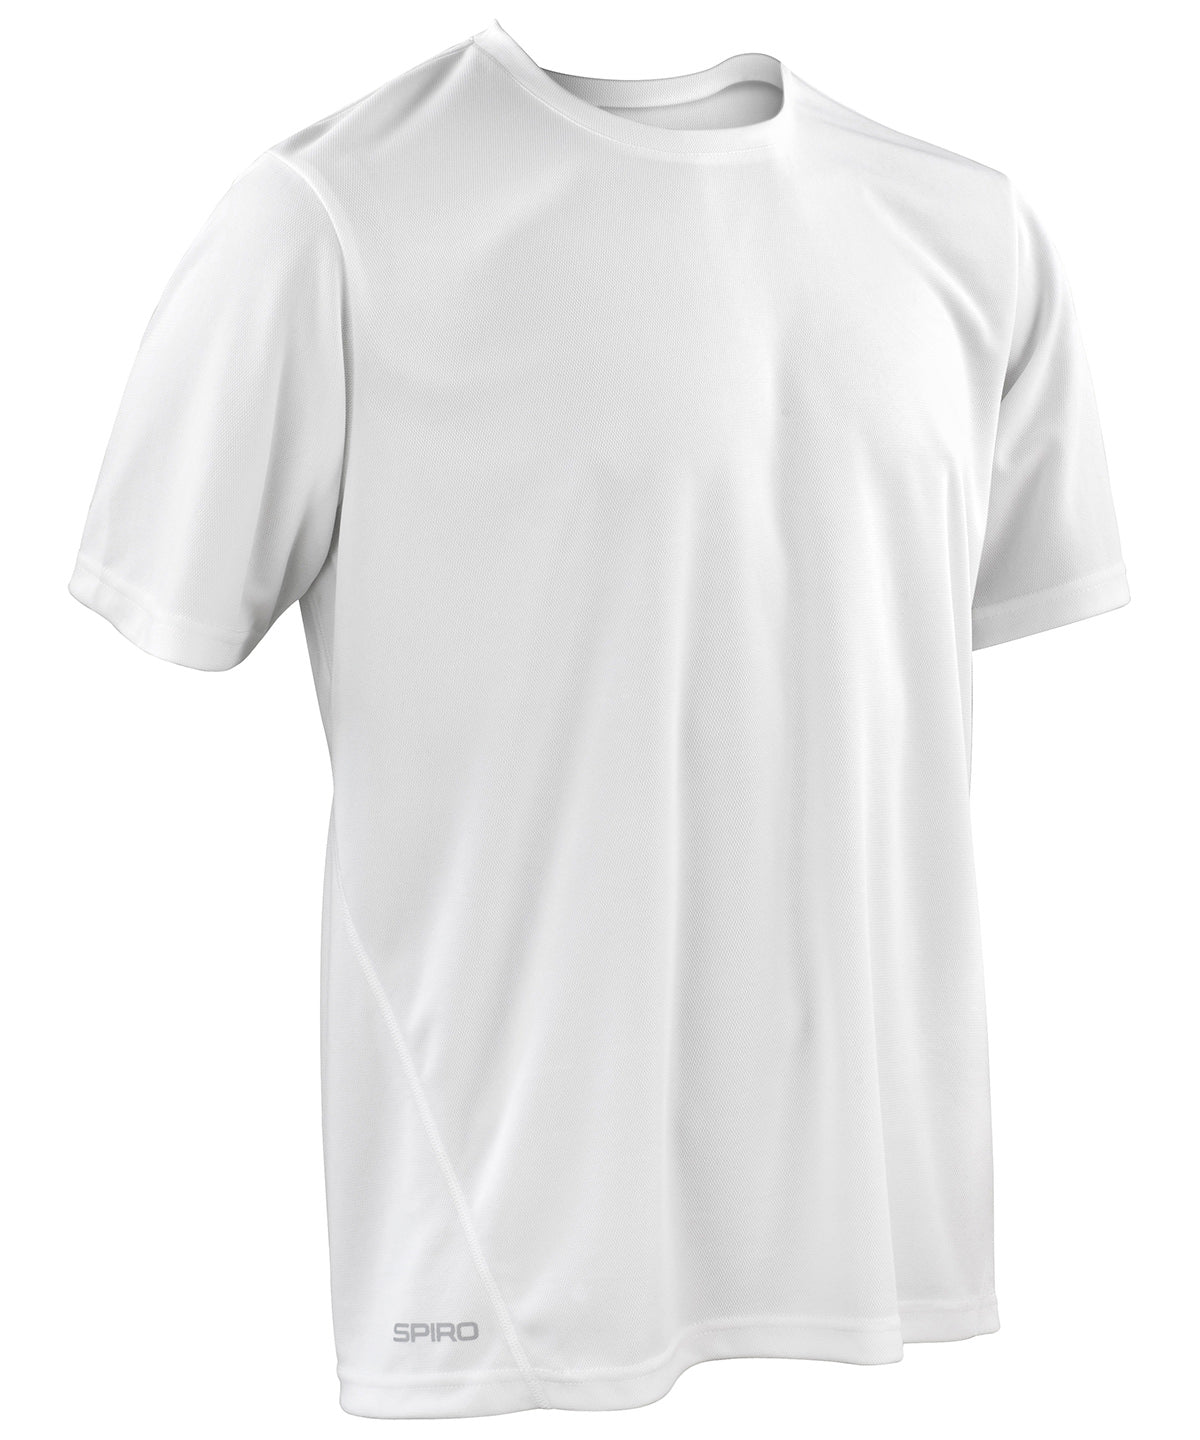 Stuttermabolir - Spiro Quick-dry Short Sleeve T-shirt